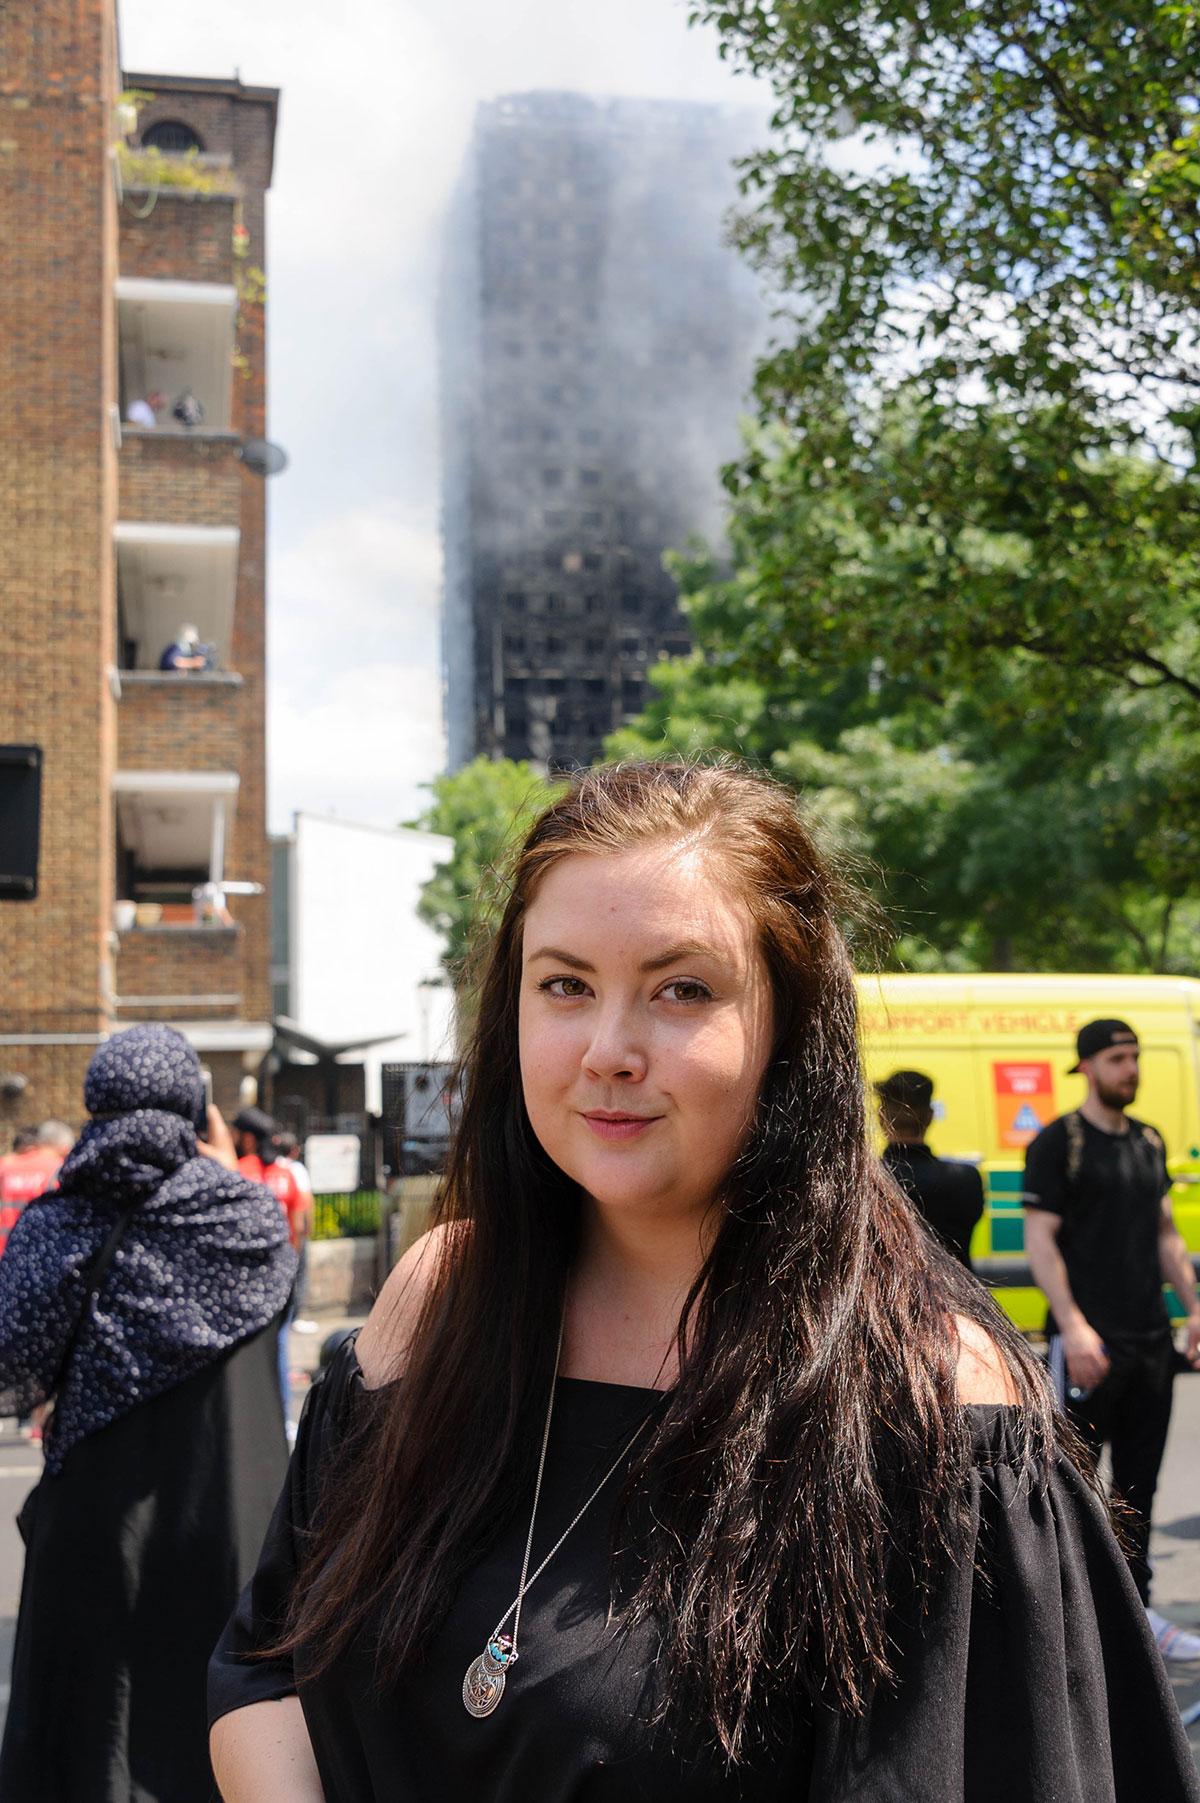 Viktoria, 26, från Göteborg vaknade av skrik: ”Folk skrek namnet på någon de saknade”. 